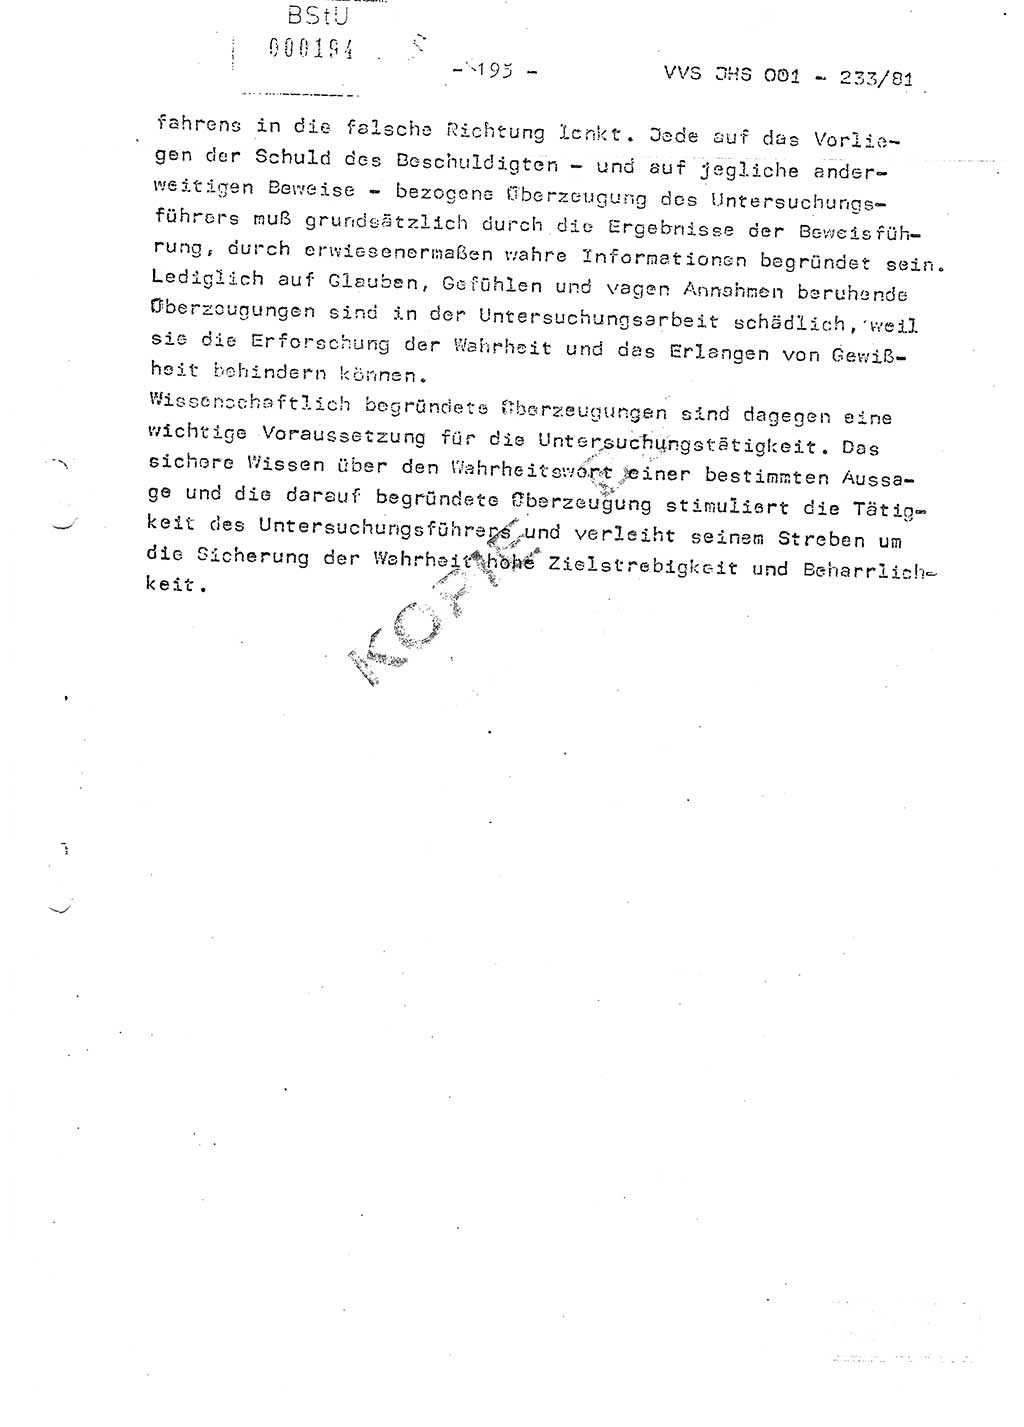 Dissertation Oberstleutnant Horst Zank (JHS), Oberstleutnant Dr. Karl-Heinz Knoblauch (JHS), Oberstleutnant Gustav-Adolf Kowalewski (HA Ⅸ), Oberstleutnant Wolfgang Plötner (HA Ⅸ), Ministerium für Staatssicherheit (MfS) [Deutsche Demokratische Republik (DDR)], Juristische Hochschule (JHS), Vertrauliche Verschlußsache (VVS) o001-233/81, Potsdam 1981, Blatt 195 (Diss. MfS DDR JHS VVS o001-233/81 1981, Bl. 195)